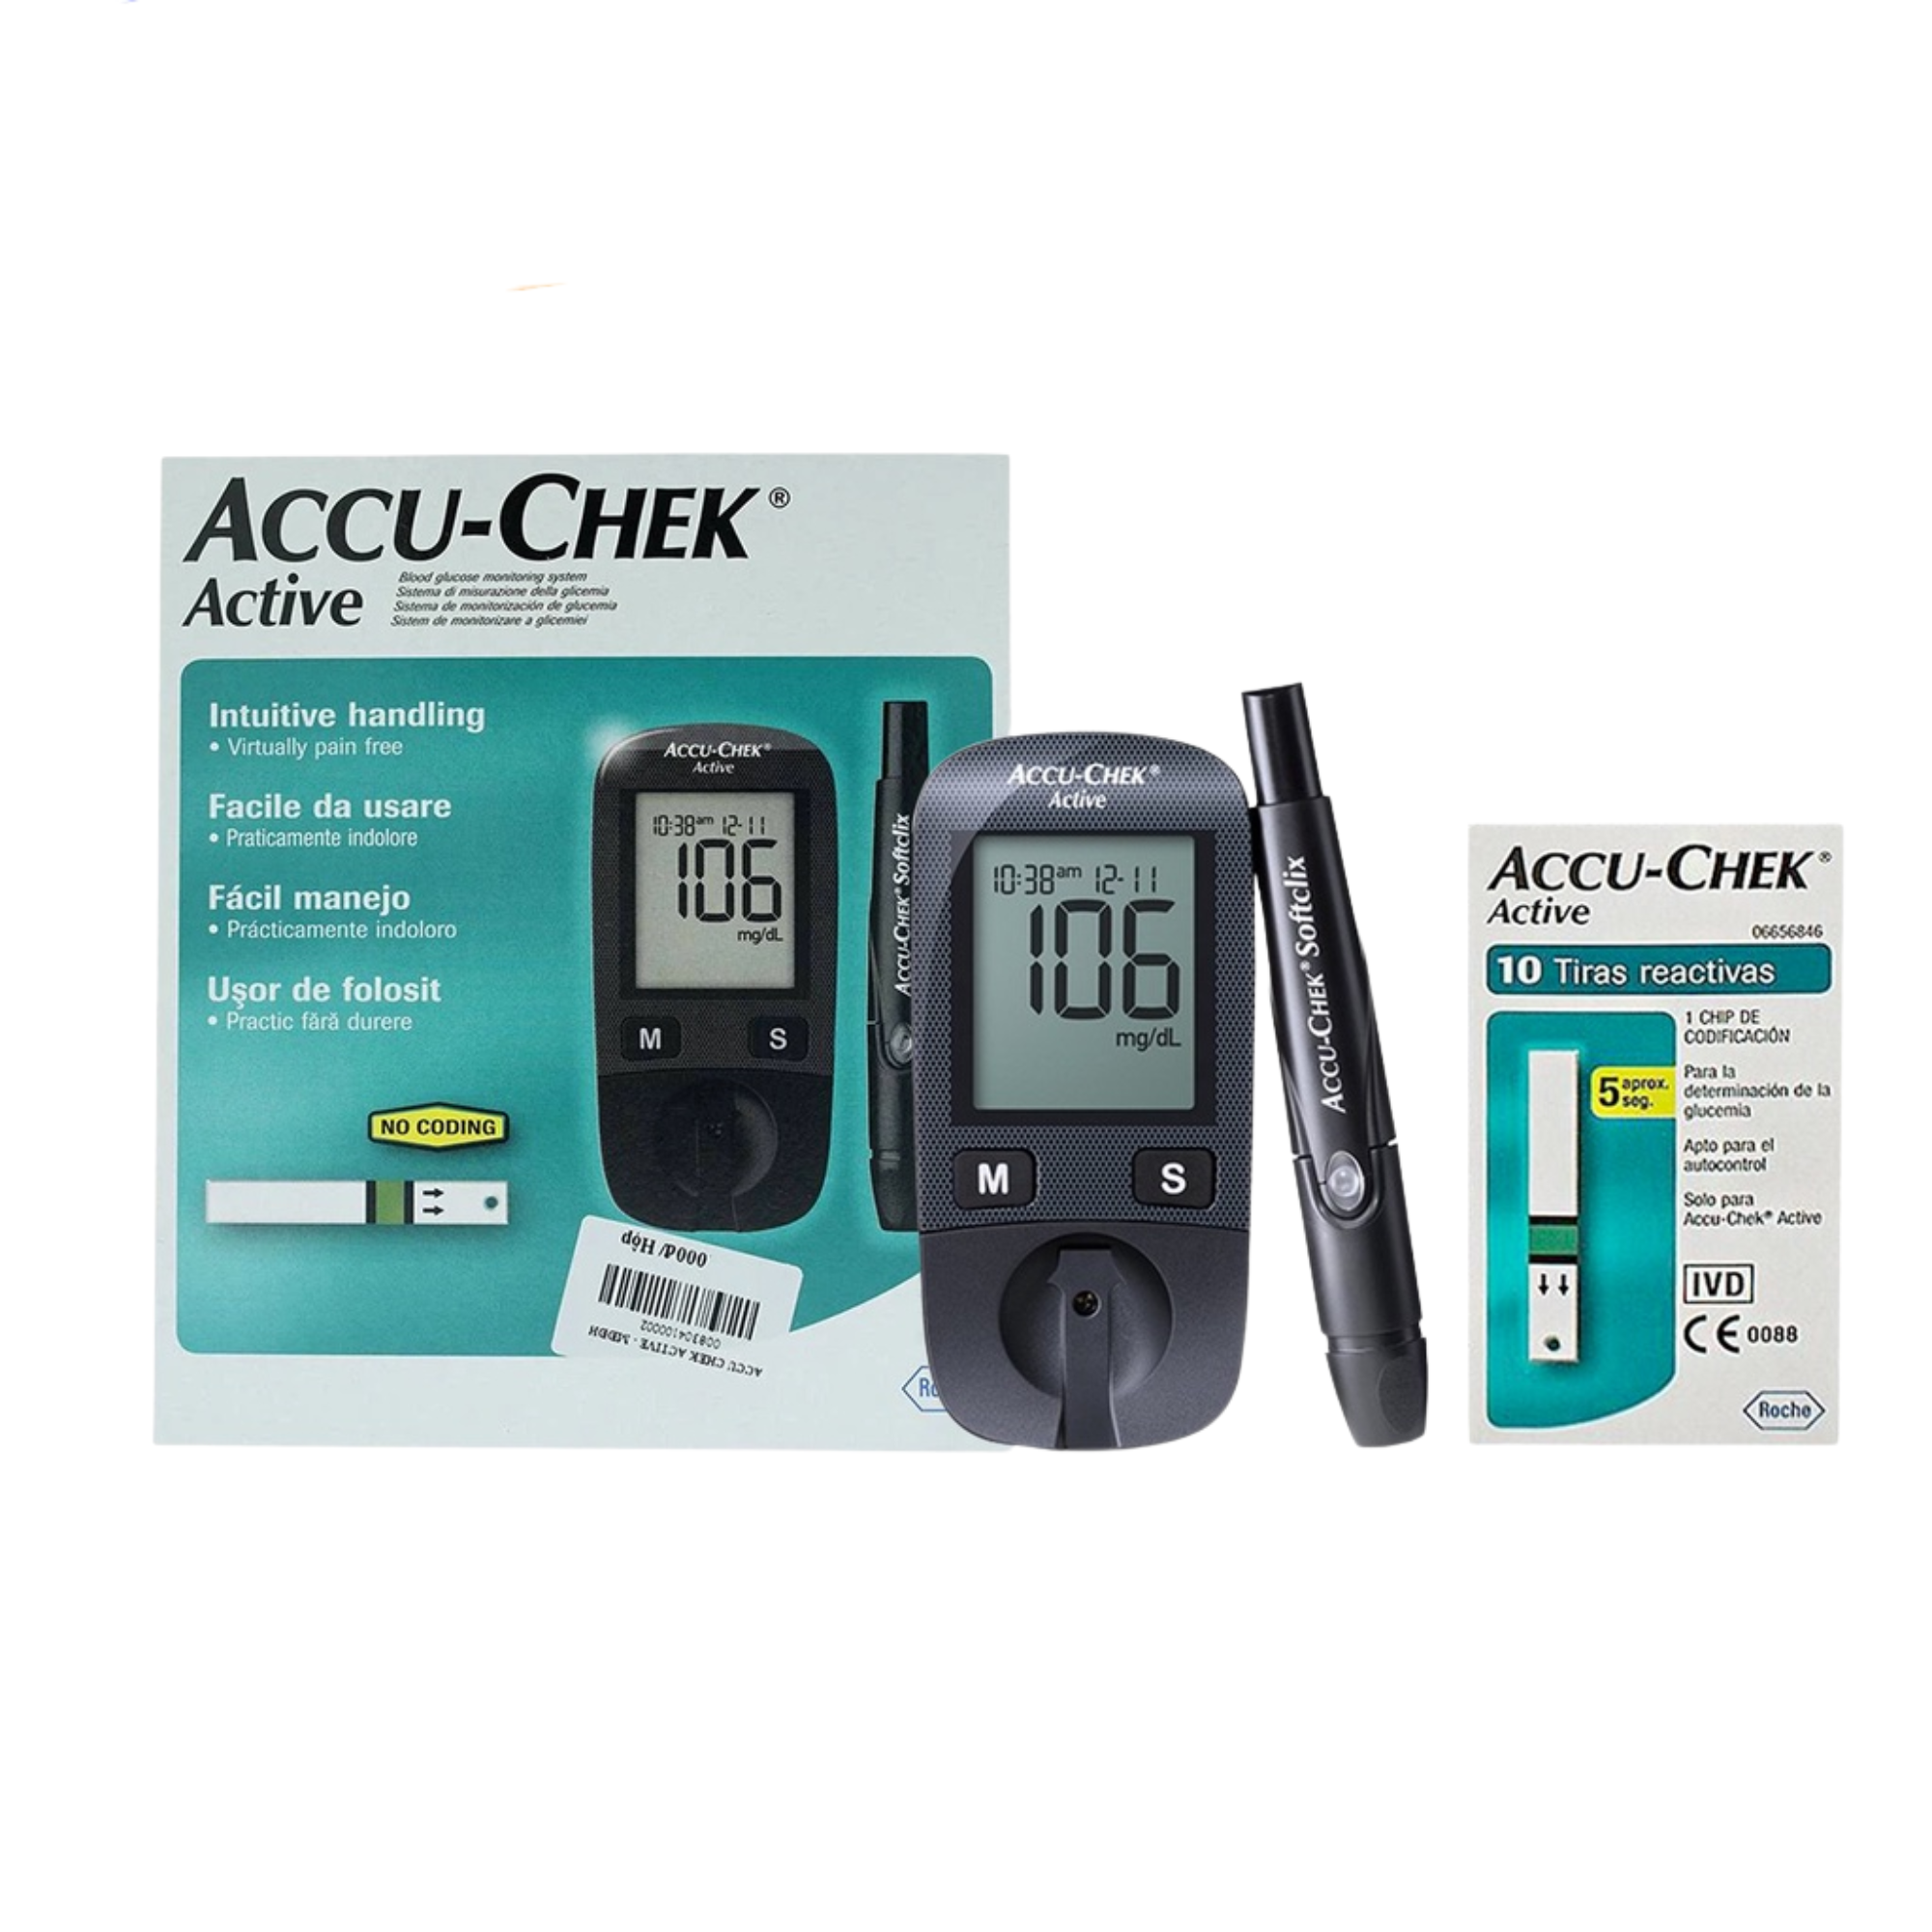 [TRỌN BỘ] Máy đo đường huyết Accu-Chek Active, Bao gồm kim và bút chích máu, TẶNG 10 que thử, Bảo hành TRỌN ĐỜI 1 ĐỔI 1